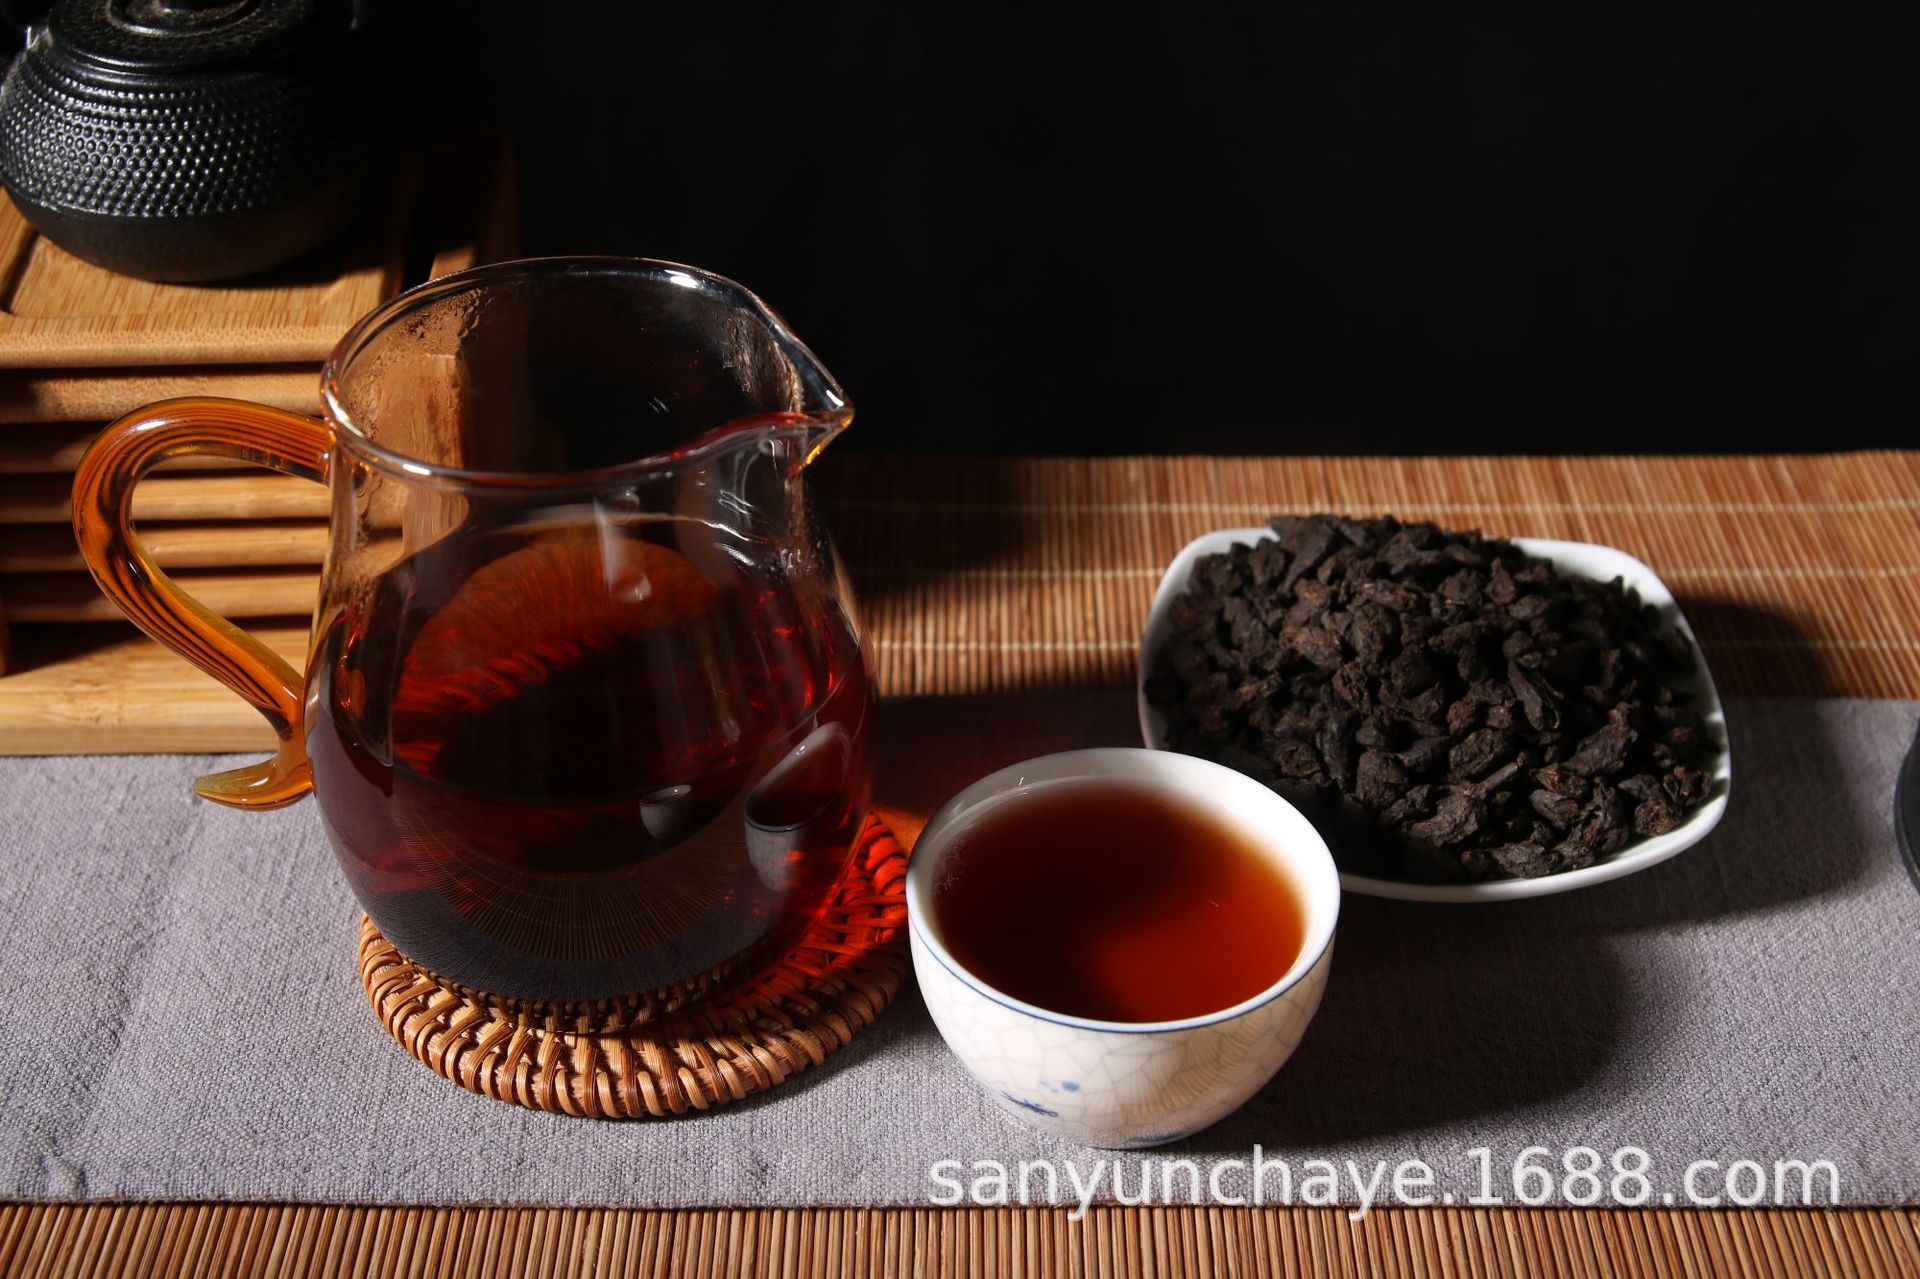 普洱茶熟茶保质期普通多长期间 红茶保质期普通多长期间